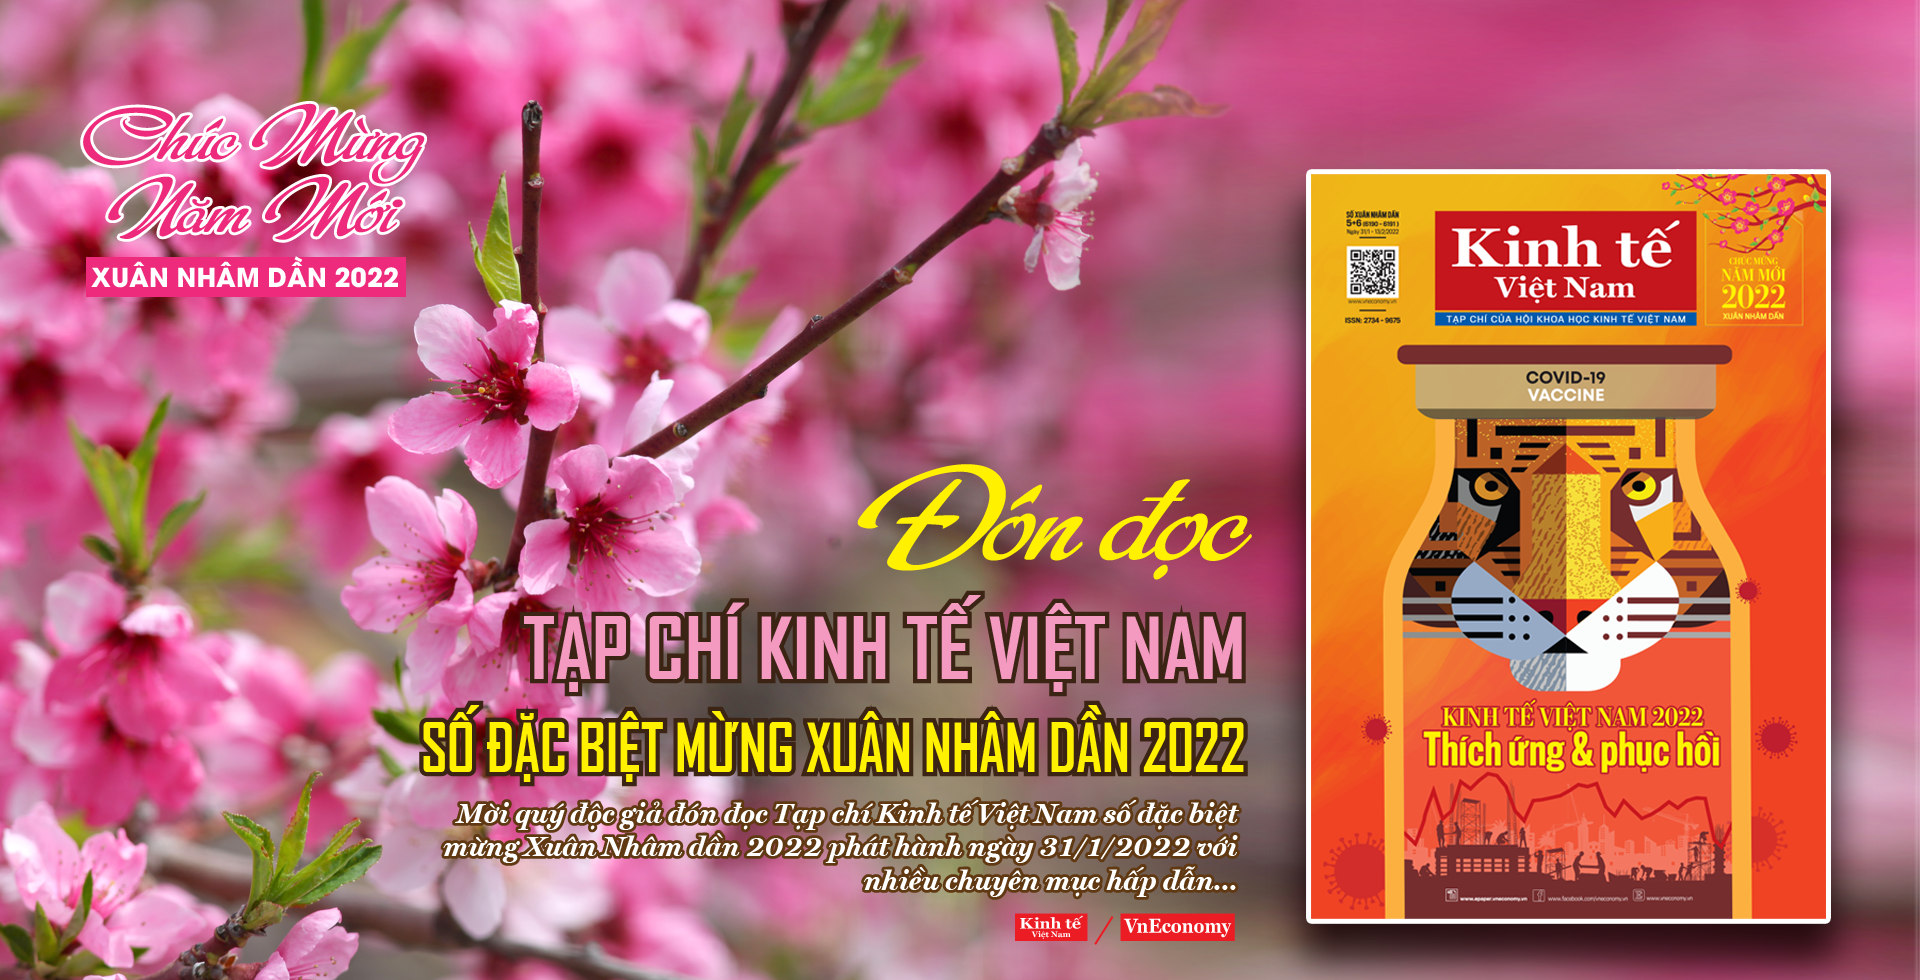 Đón đọc Tạp chí Kinh tế Việt Nam số đặc biệt Xuân Nhâm dần 2022 - Ảnh 1